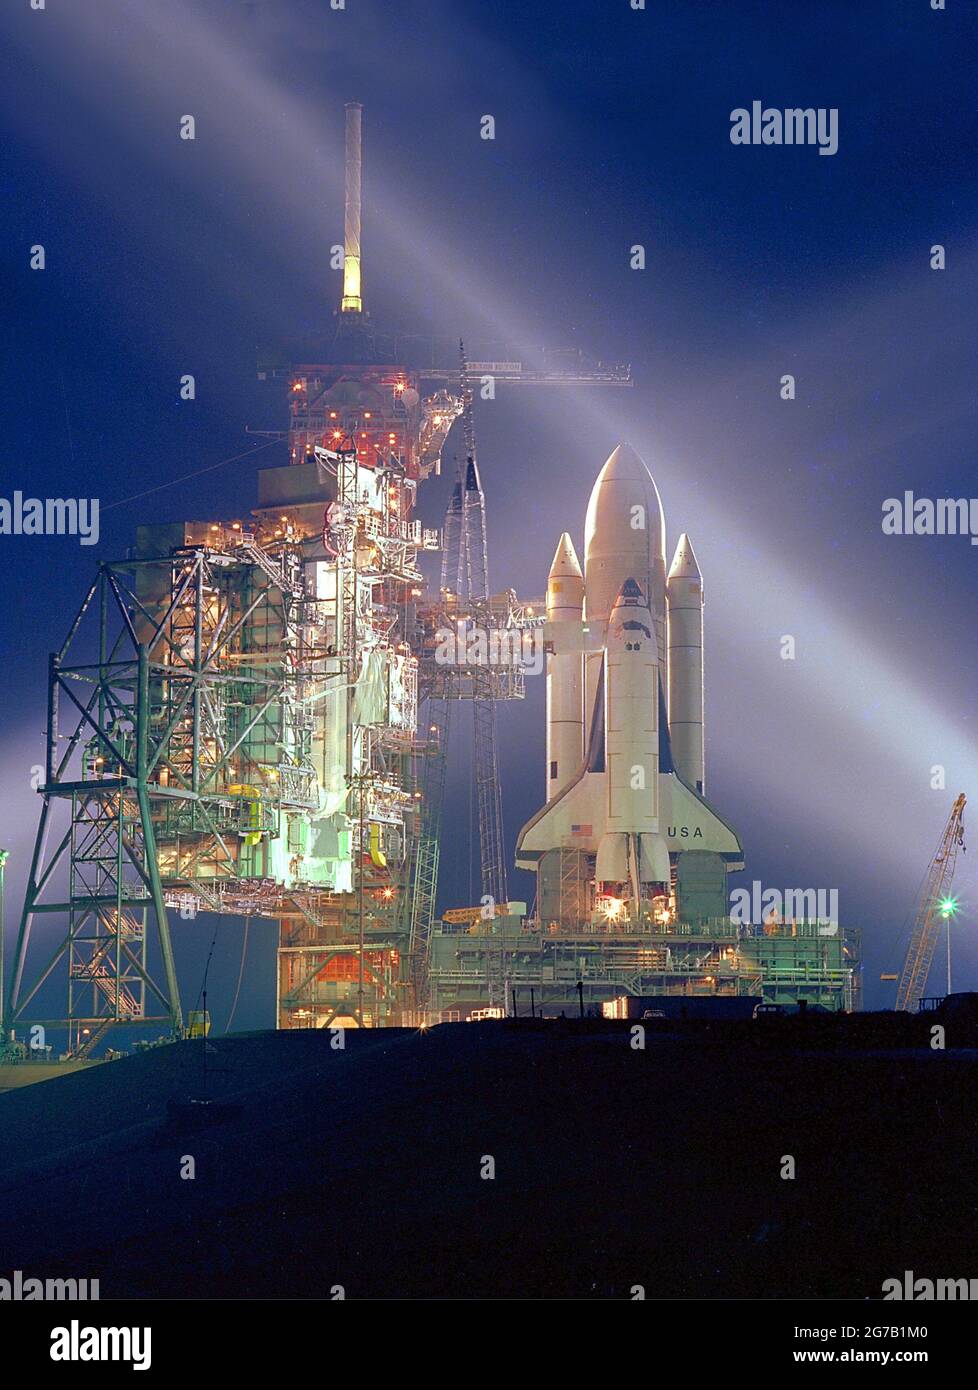 Pre-lancio STS-1. STS-1 (Space Transportation System-1) è stato il primo volo spaziale orbitale del programma Space Shuttle della NASA. Una nuova era nel volo spaziale iniziò il 12 aprile 1981, quando lo Space Shuttle Columbia salì in orbita dal Kennedy Space Center della NASA in Florida. Una versione unica ottimizzata e migliorata di un'immagine NASA / credito NASA Foto Stock